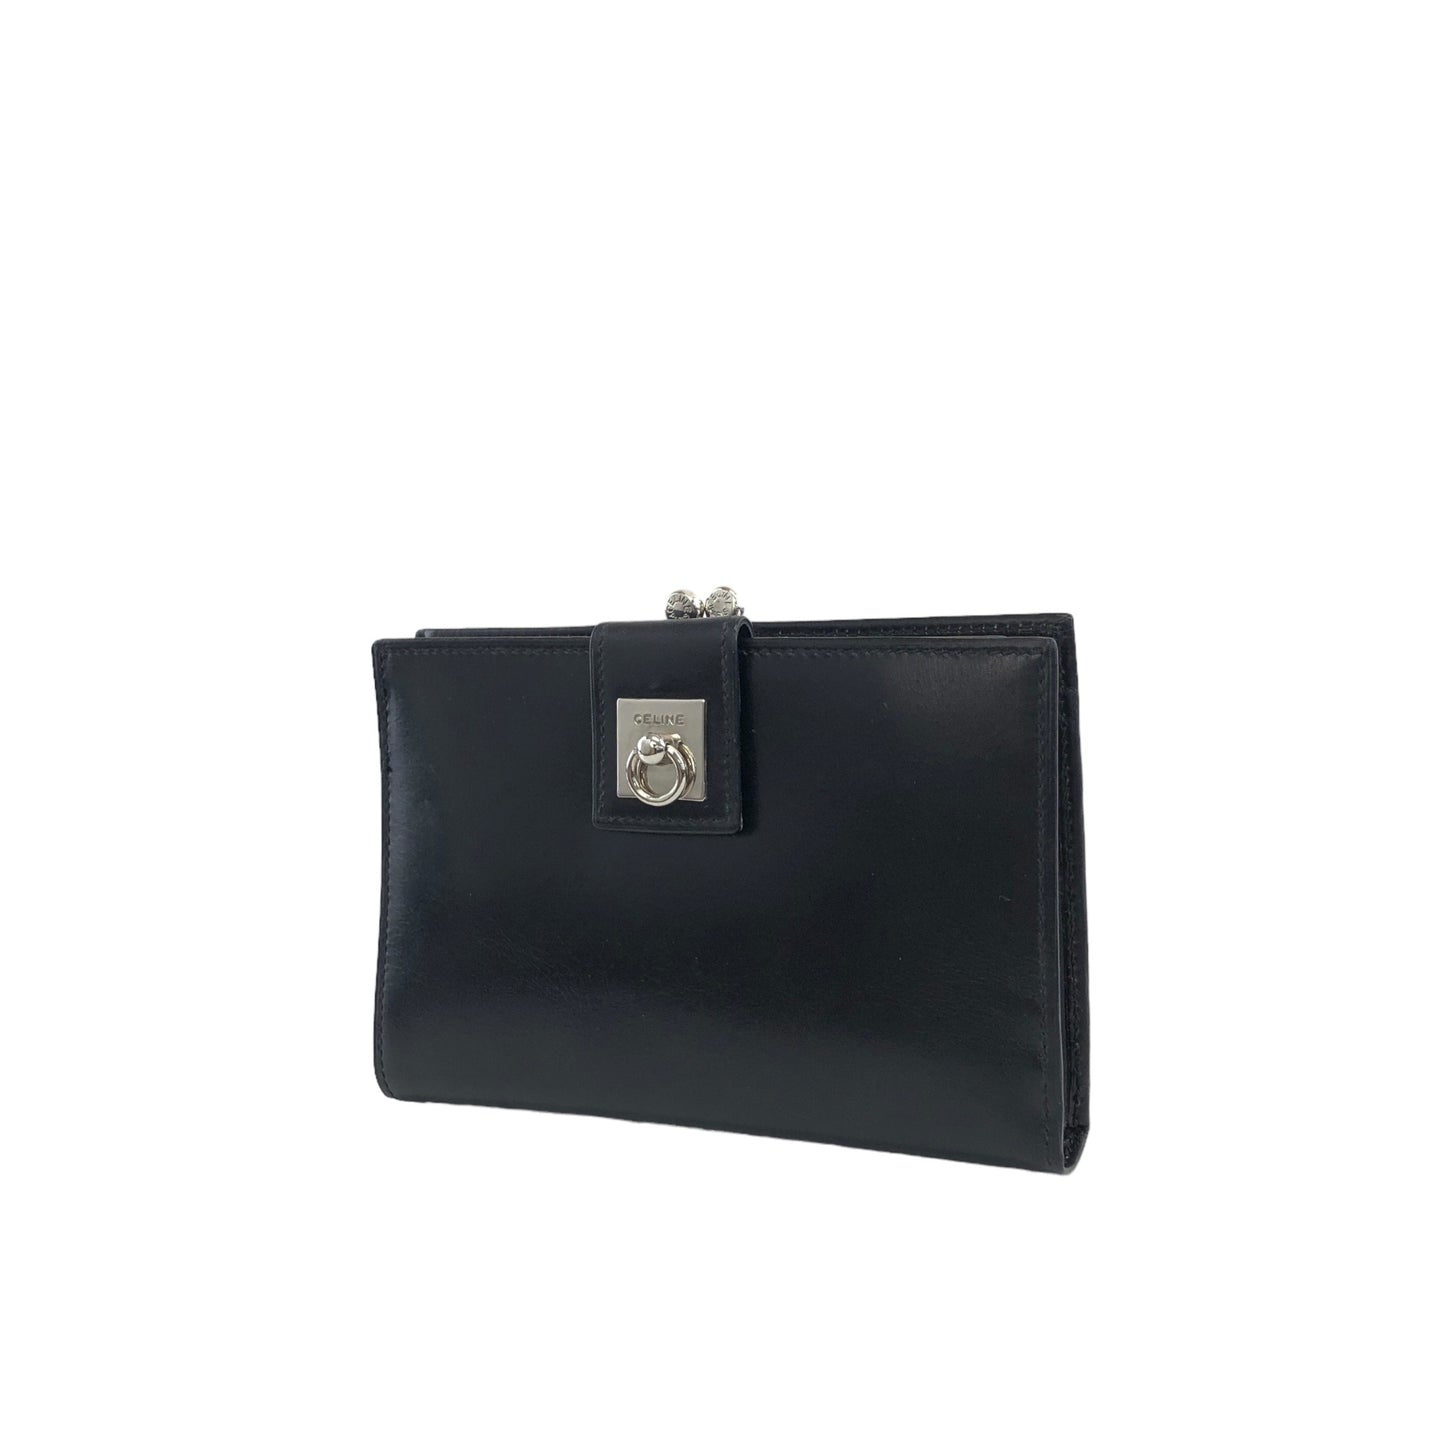 CELINE Gancini  Leather Metal Clasp Folded Wallet Black Vintage pk72c5